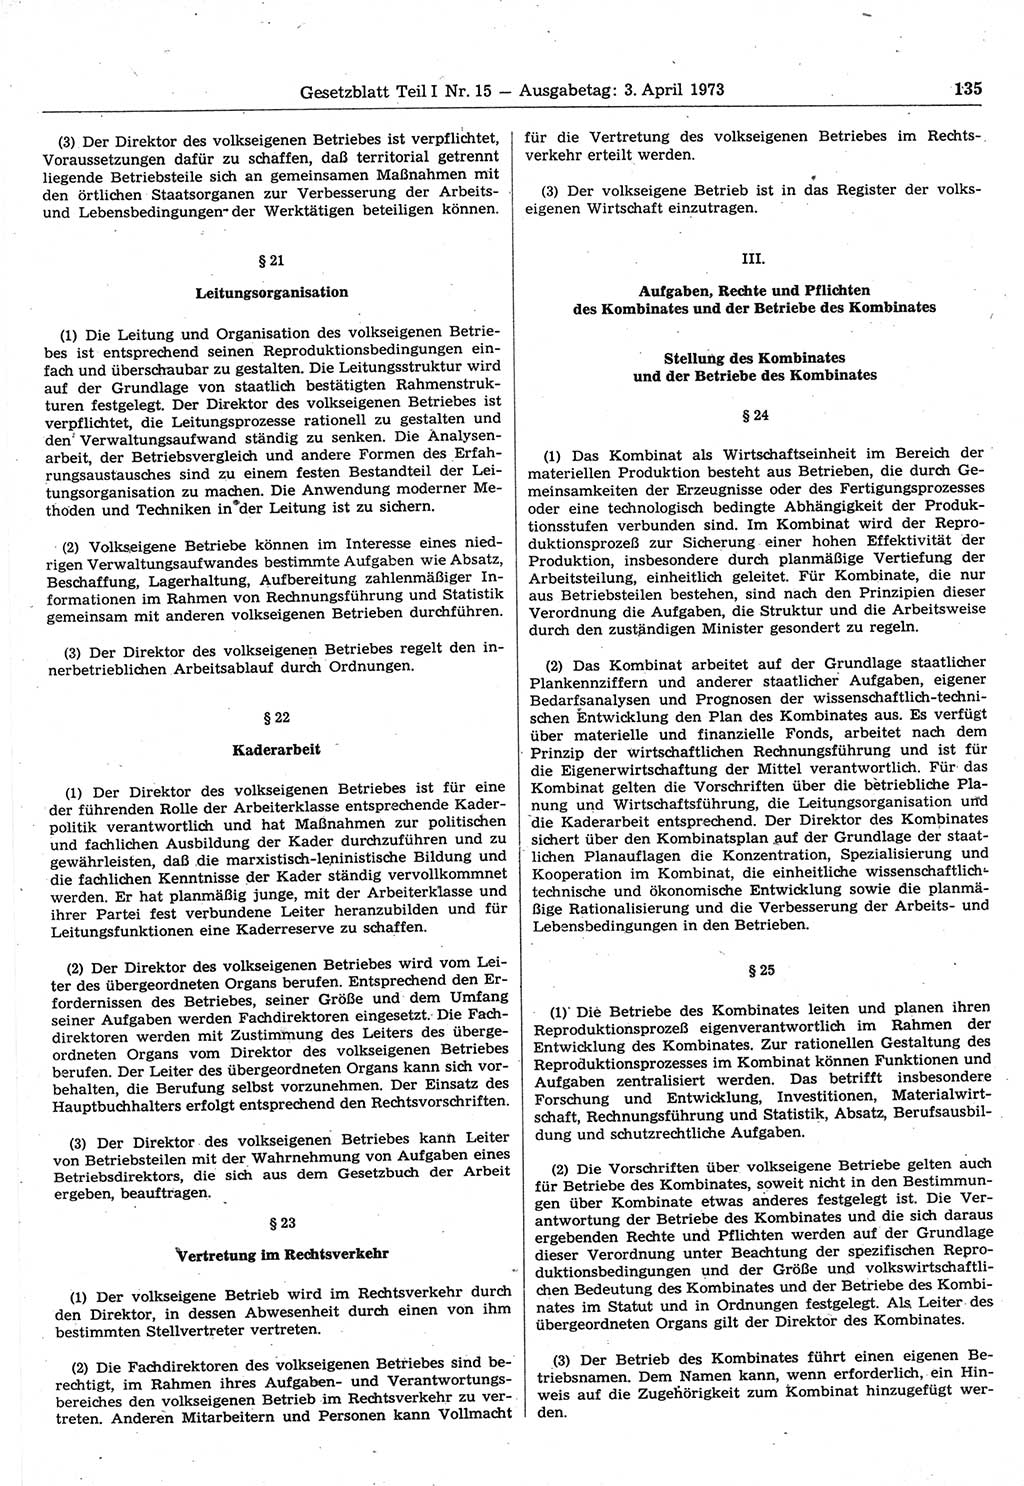 Gesetzblatt (GBl.) der Deutschen Demokratischen Republik (DDR) Teil Ⅰ 1973, Seite 135 (GBl. DDR Ⅰ 1973, S. 135)